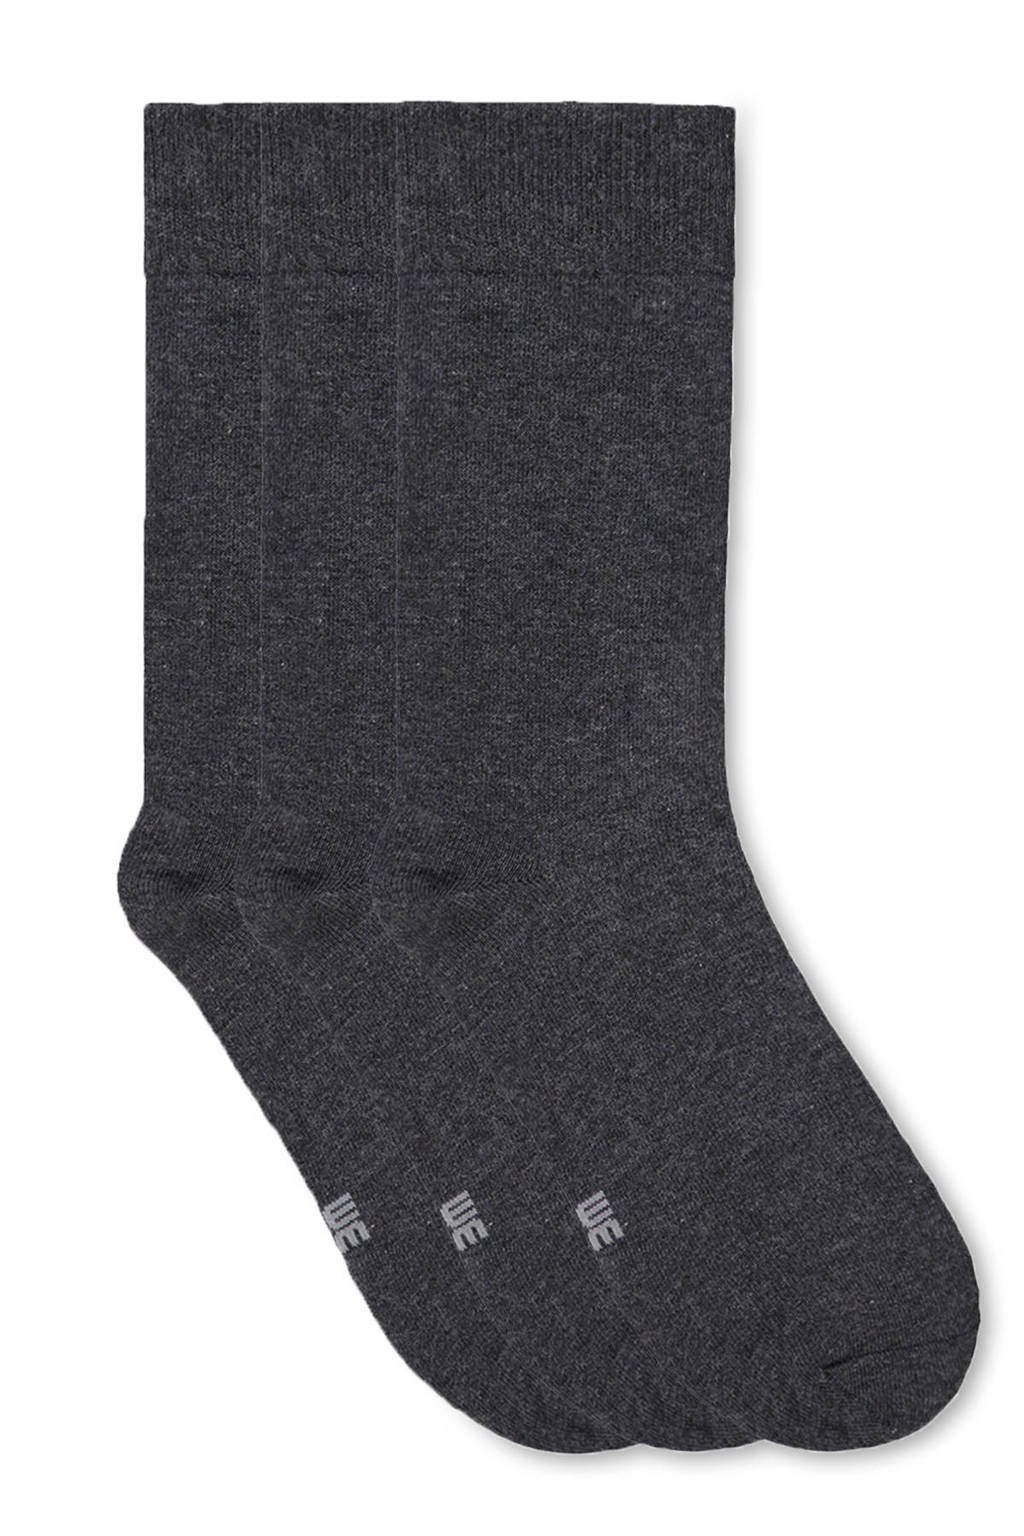 WE Fashion sokken - set van 3 antraciet, Grijs melange